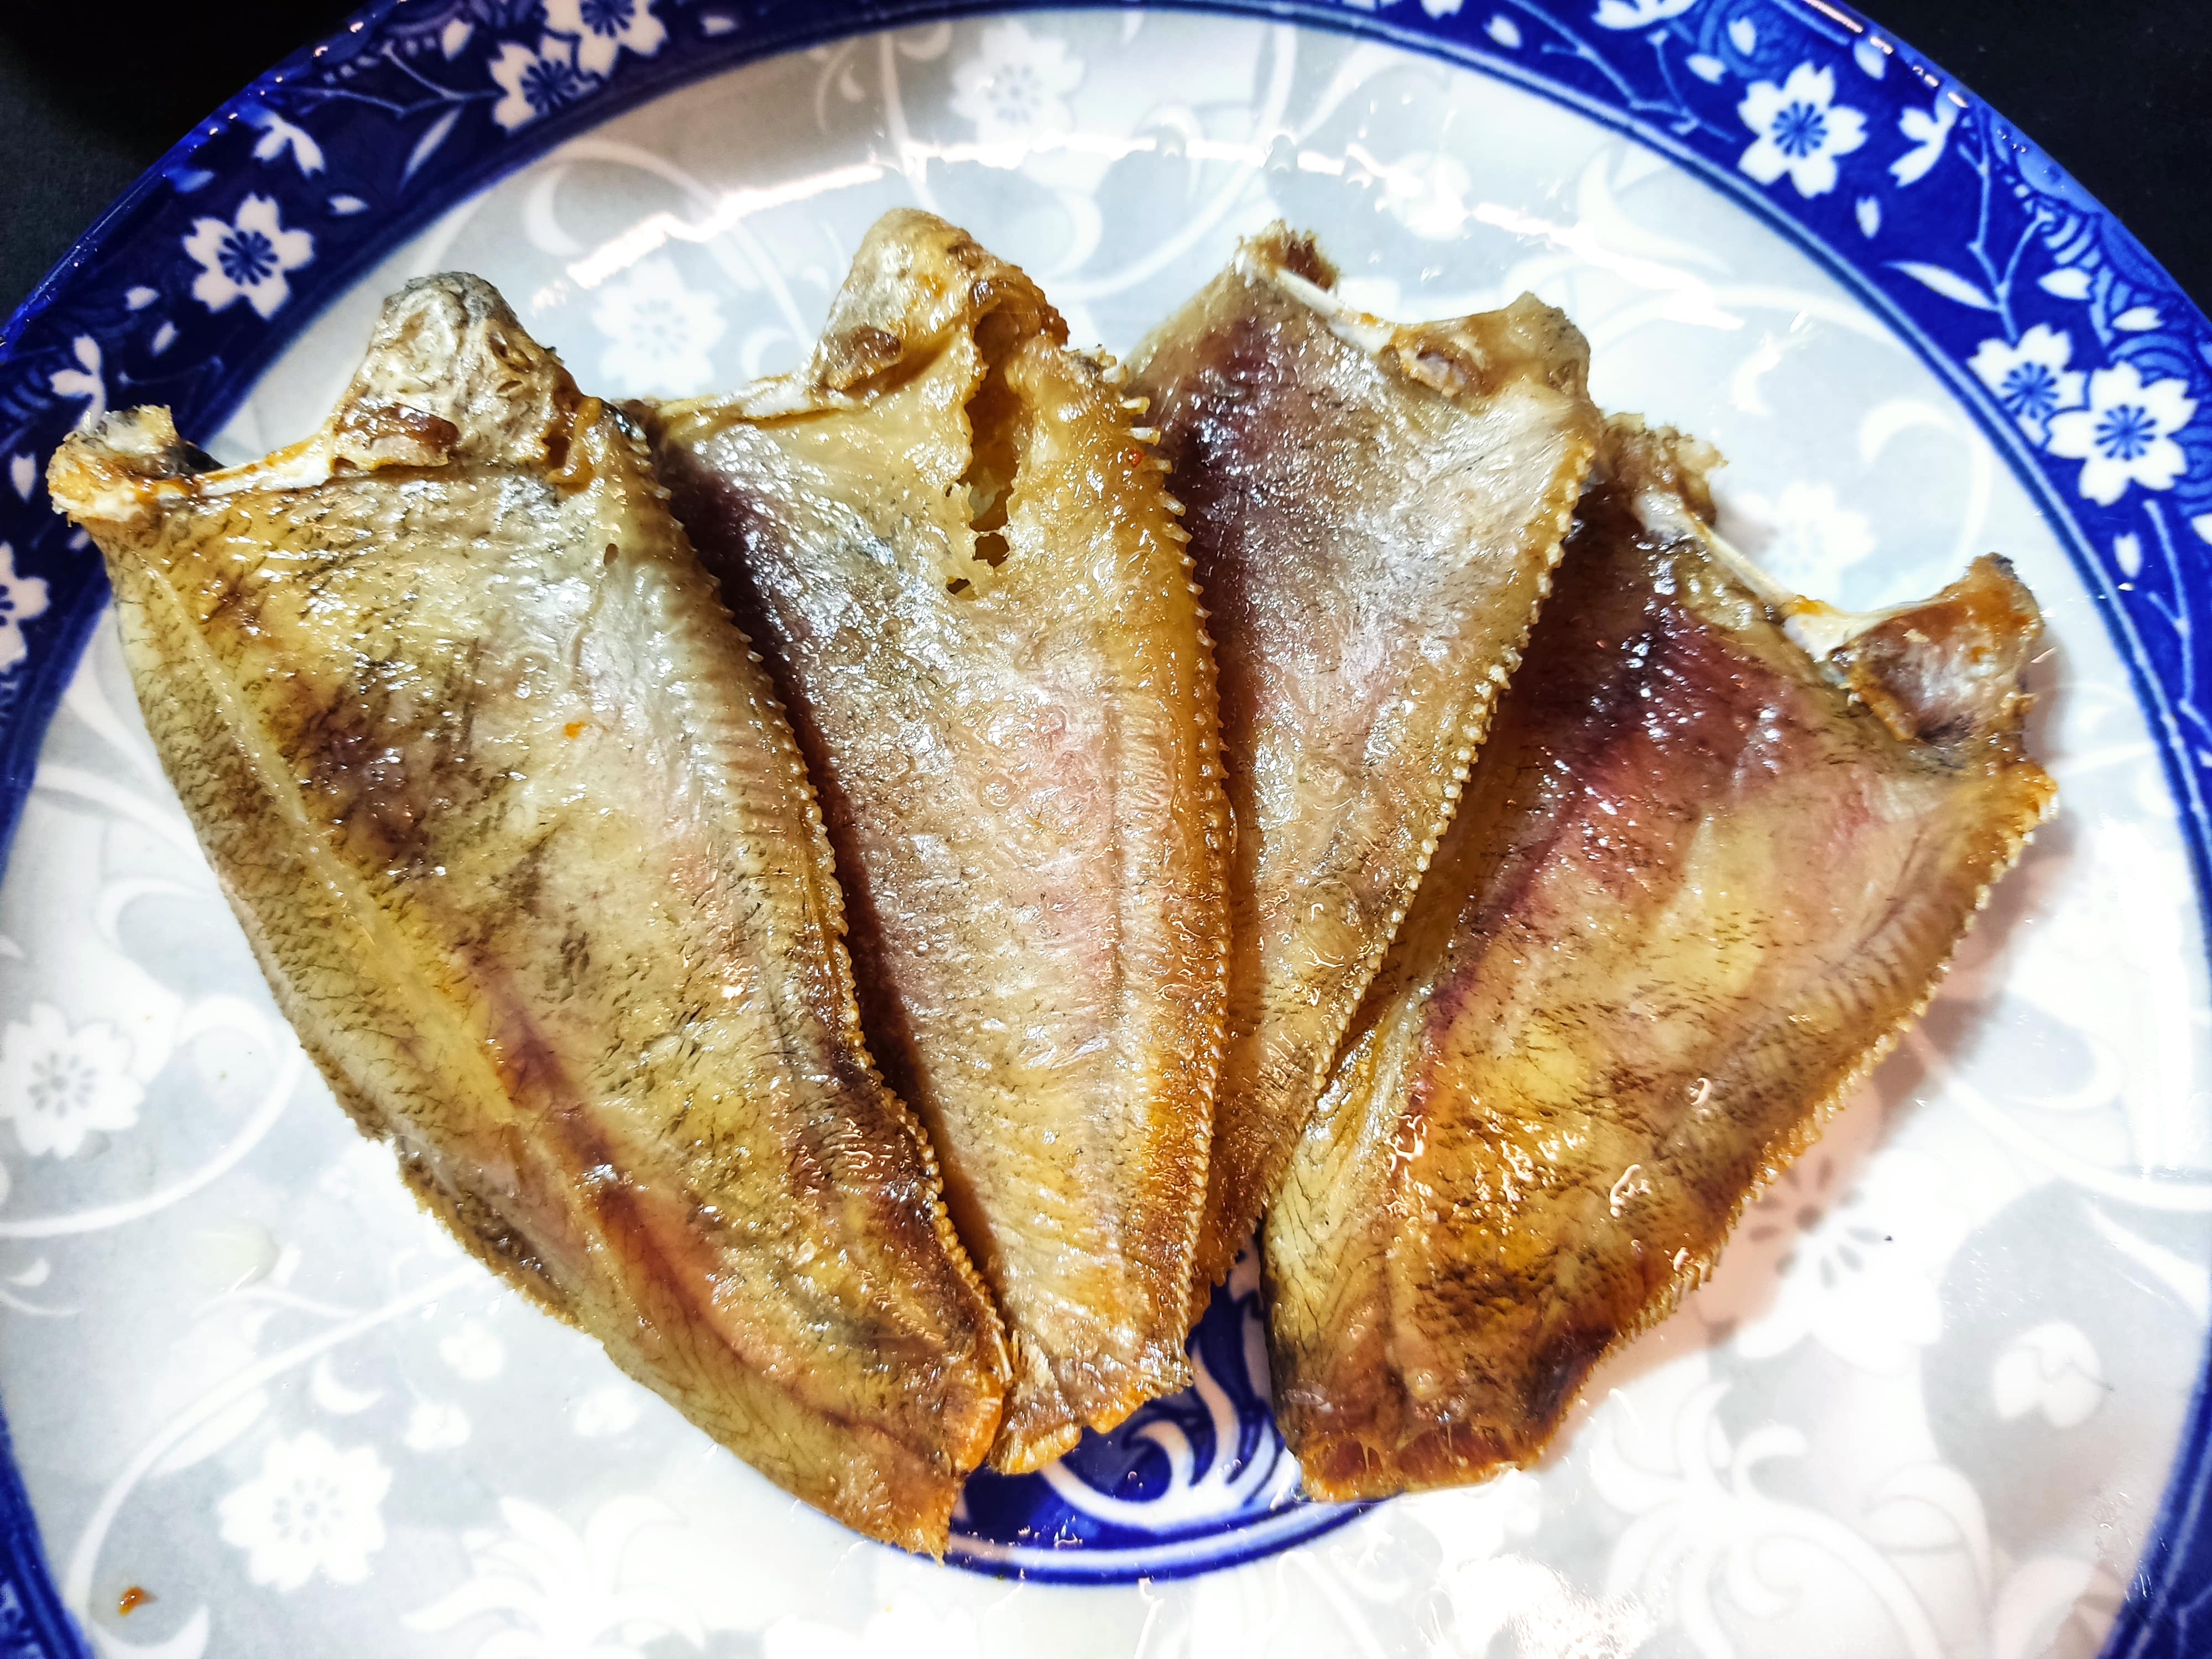 Khô Cá Sặc Rằn 3 nắng - Size vừa, vị vừa ăn Đặc Sản Khô Miền Tây Đồng Tháp